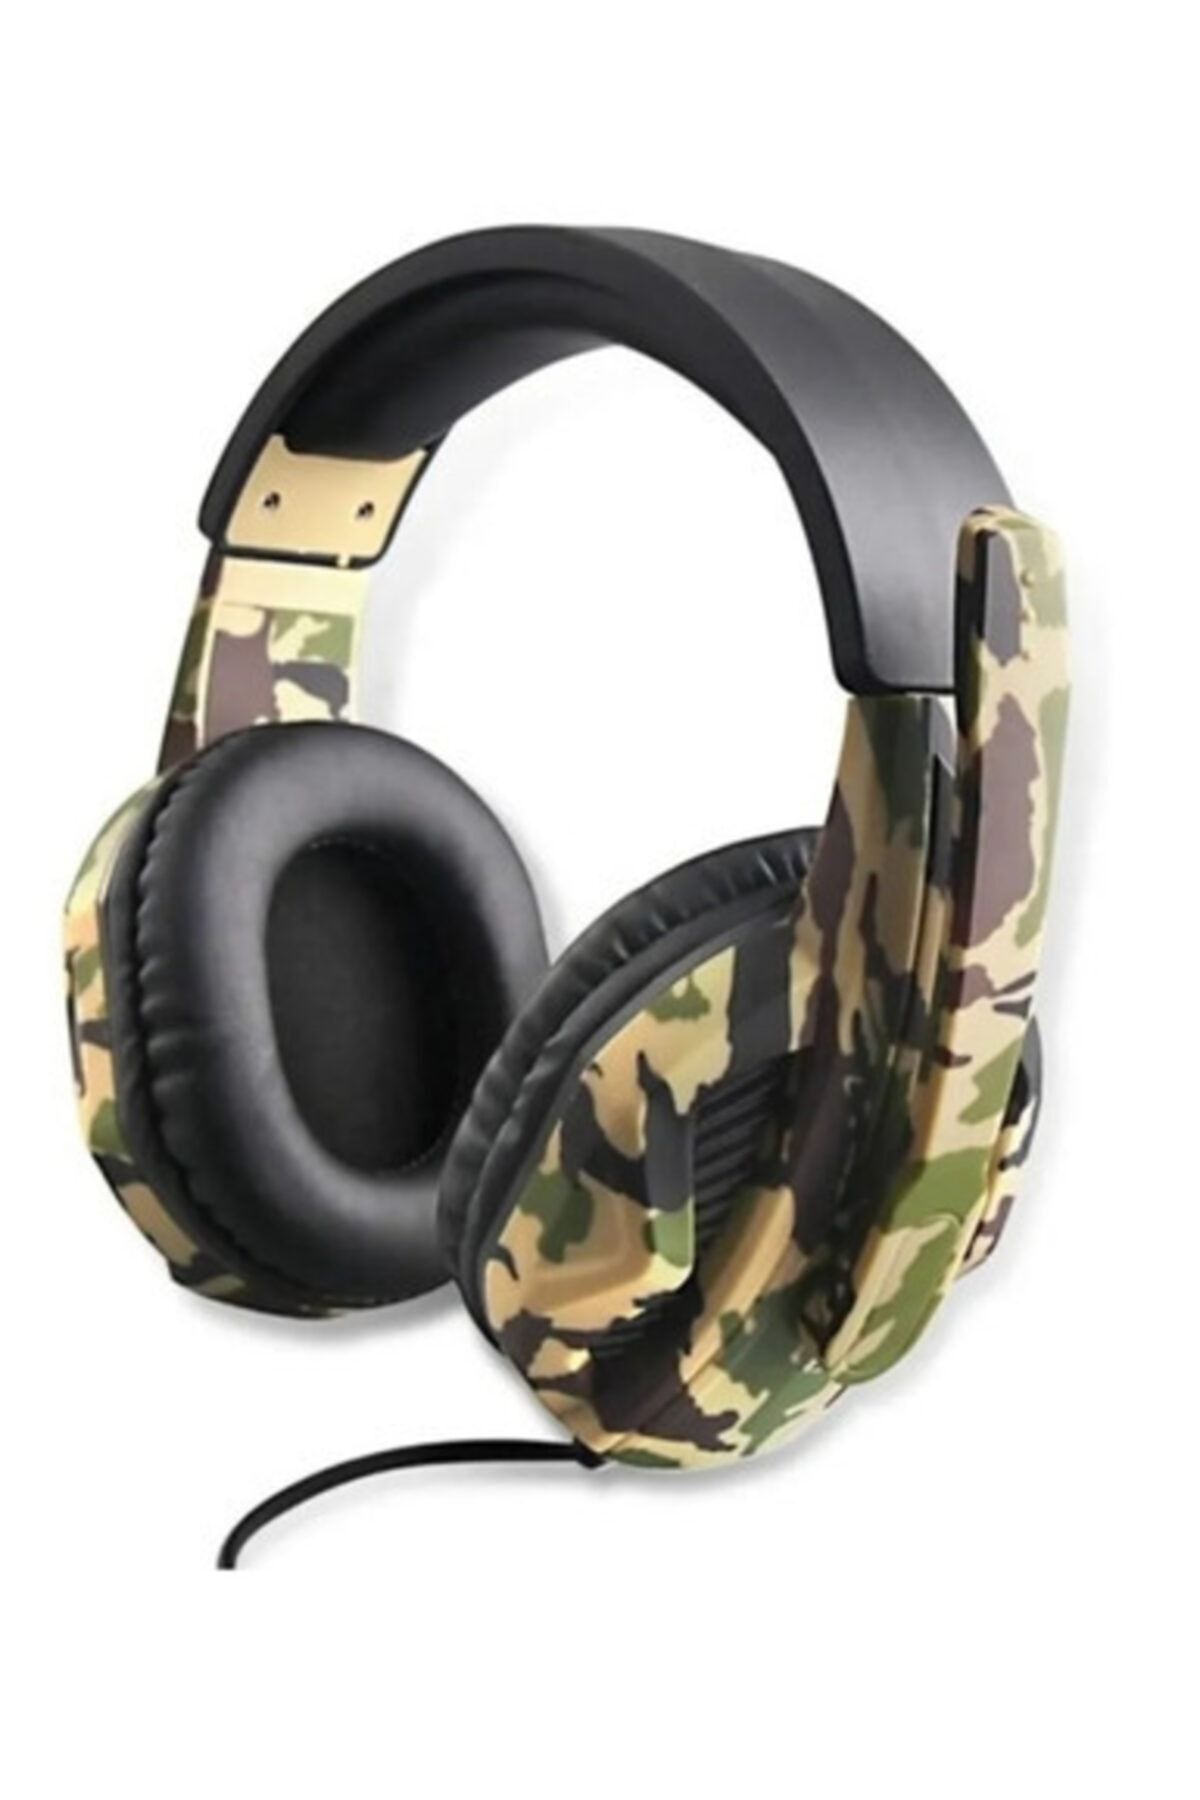 T G Oyuncu Kulaklığı Mikrofonlu Kulak Üstü Kablolu Kulaklık G4 Kamufulaj